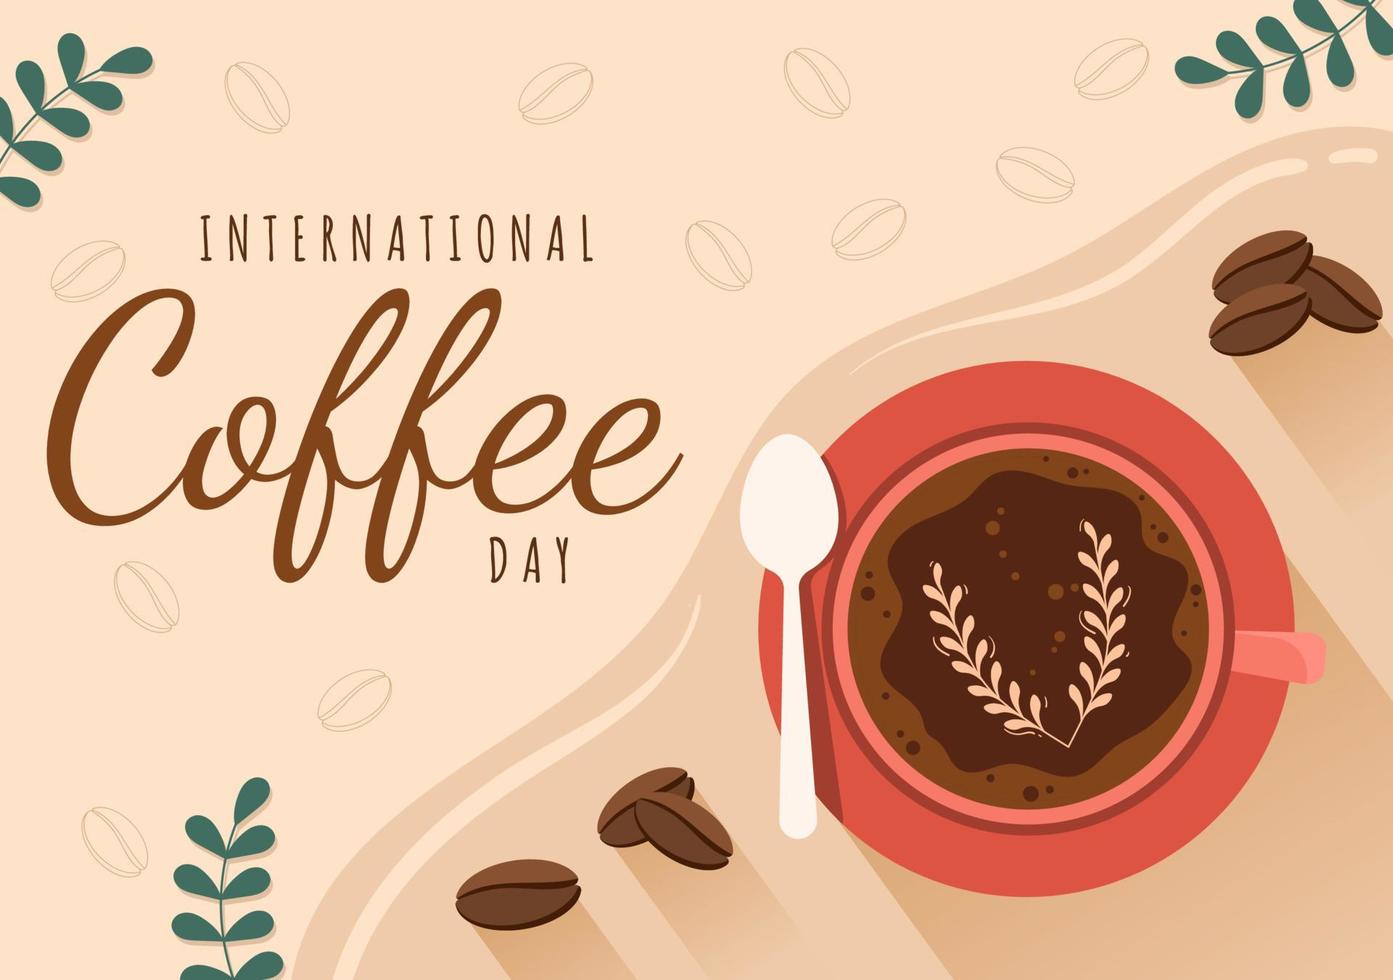 día internacional del café el 1 de octubre ilustración plana de dibujos animados dibujados a mano con granos de cacao y un vaso de diseño de bebida caliente vector